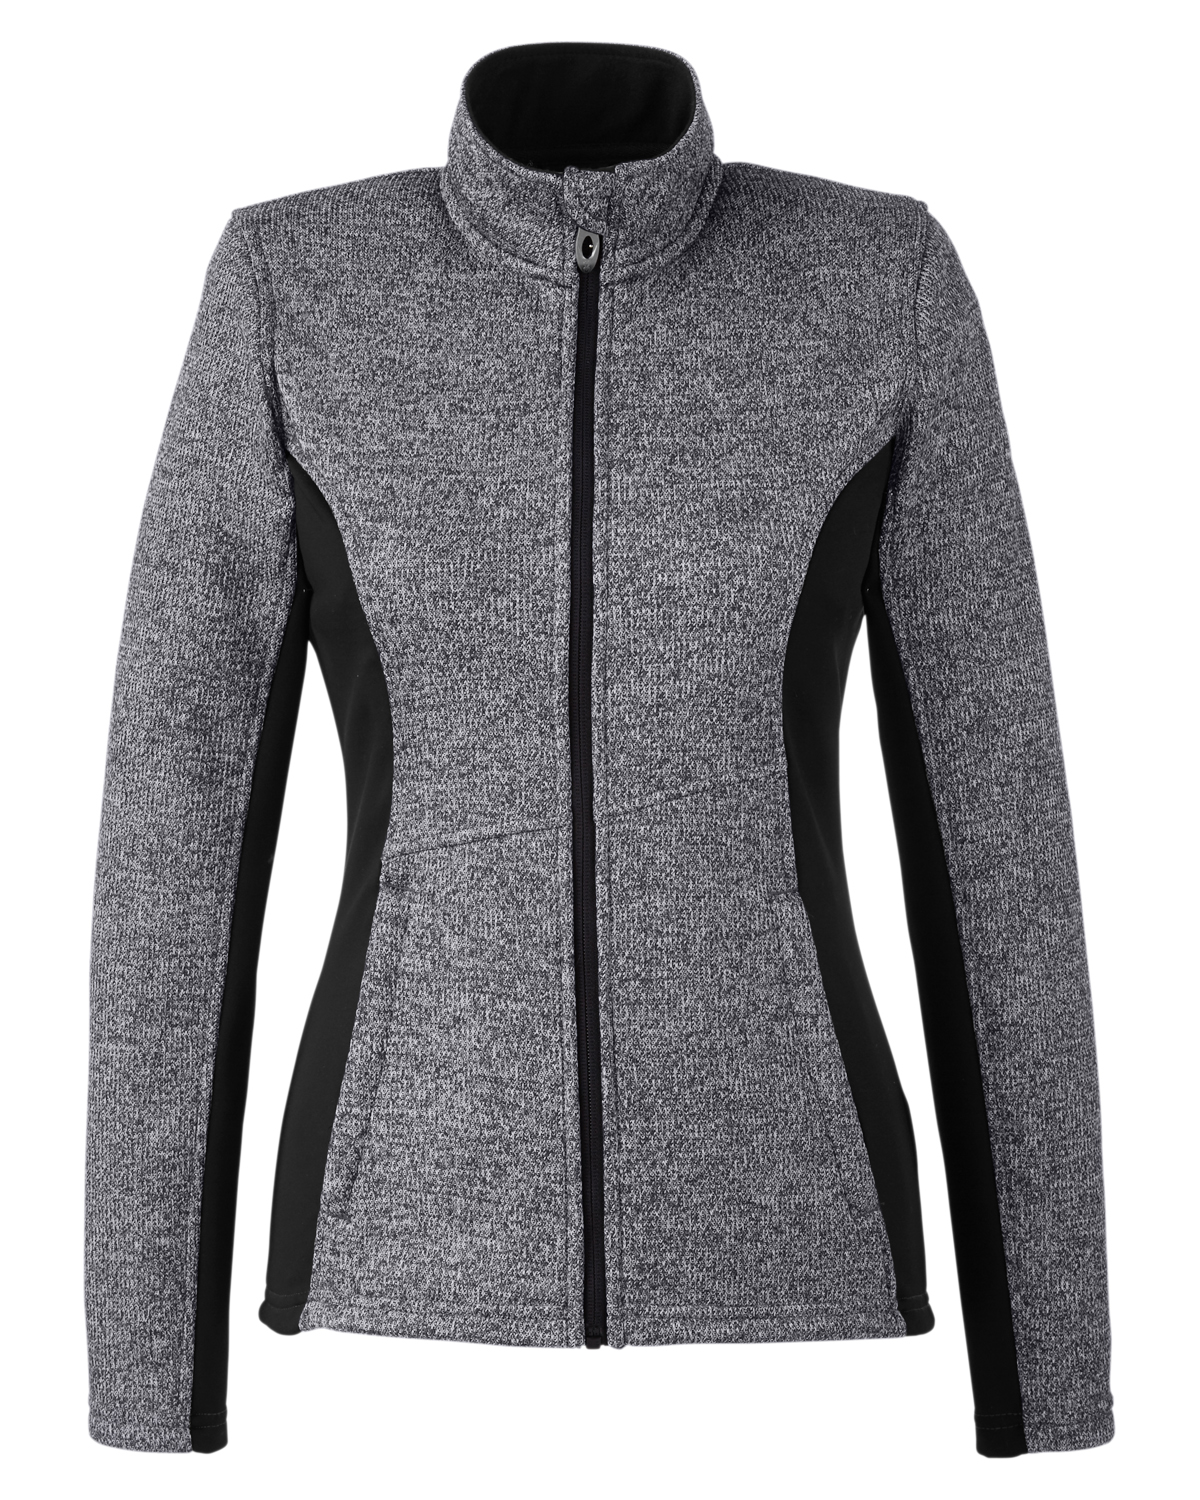 Picture of Spyder Women's Constant Full-Zip Sweater Fleece Jacket